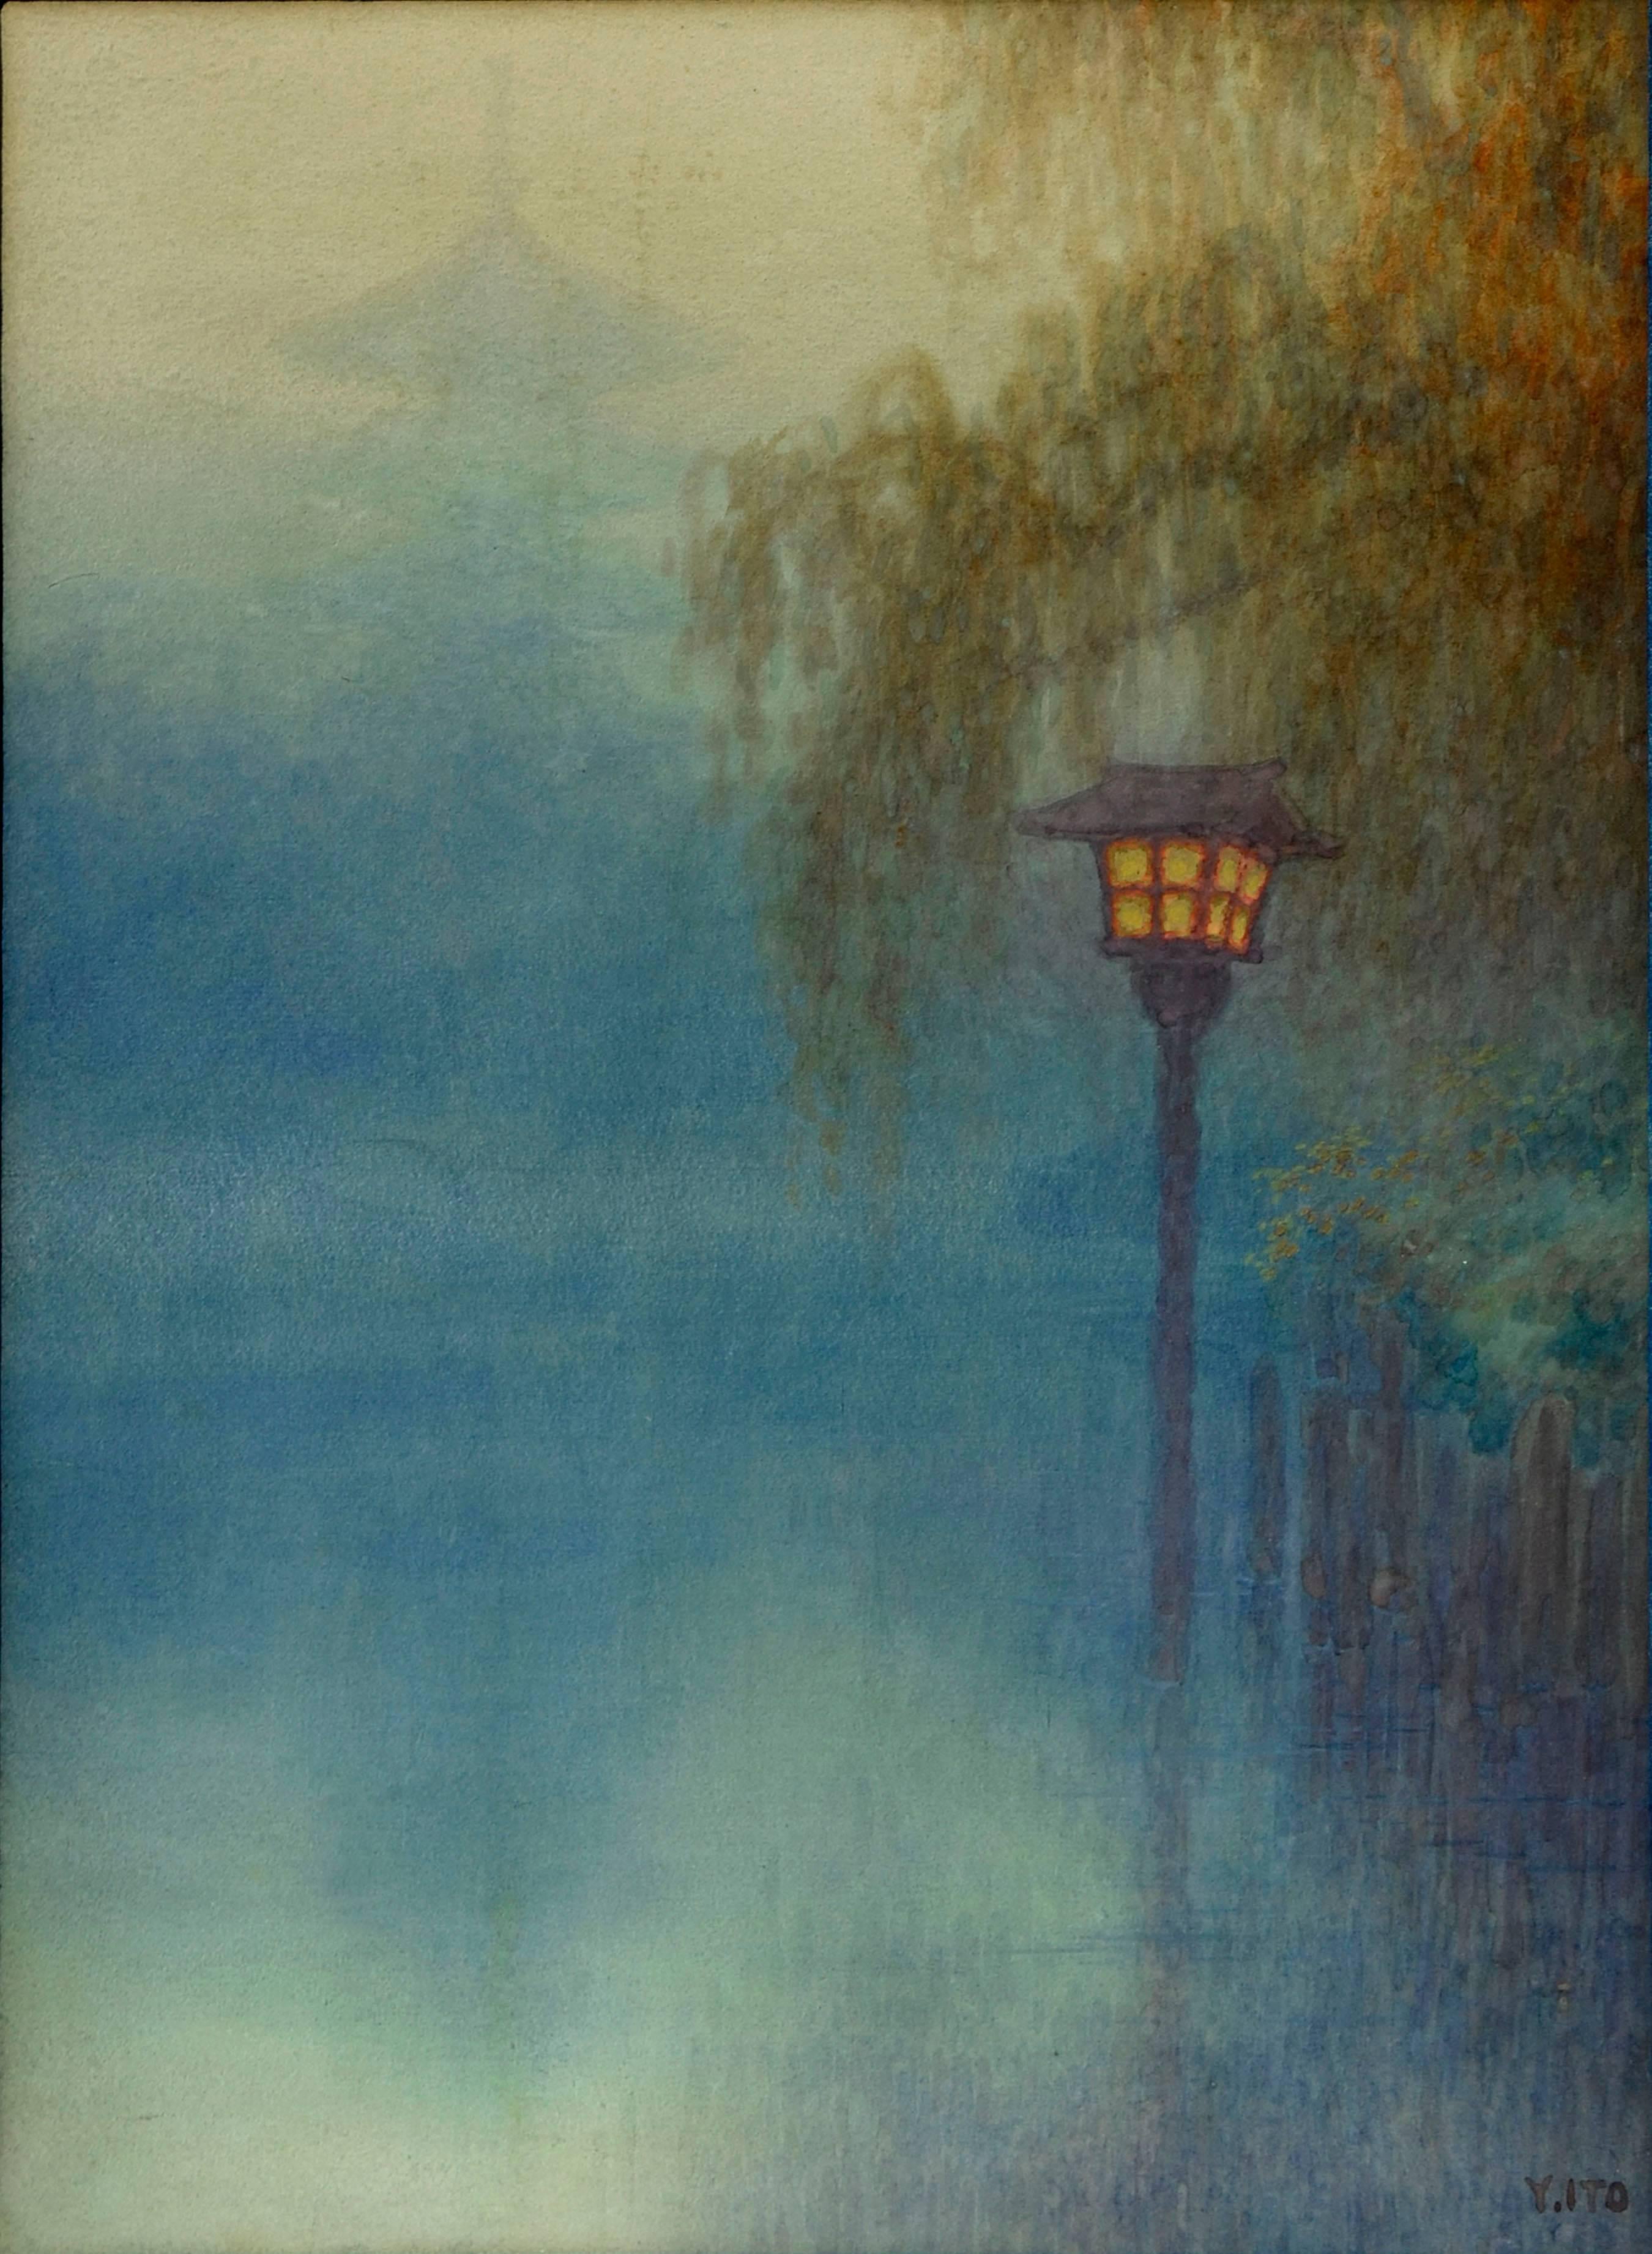 Lantern at Pond by Y. Ito - Painting by Yuhan Ito (Yoshihiko Ito)